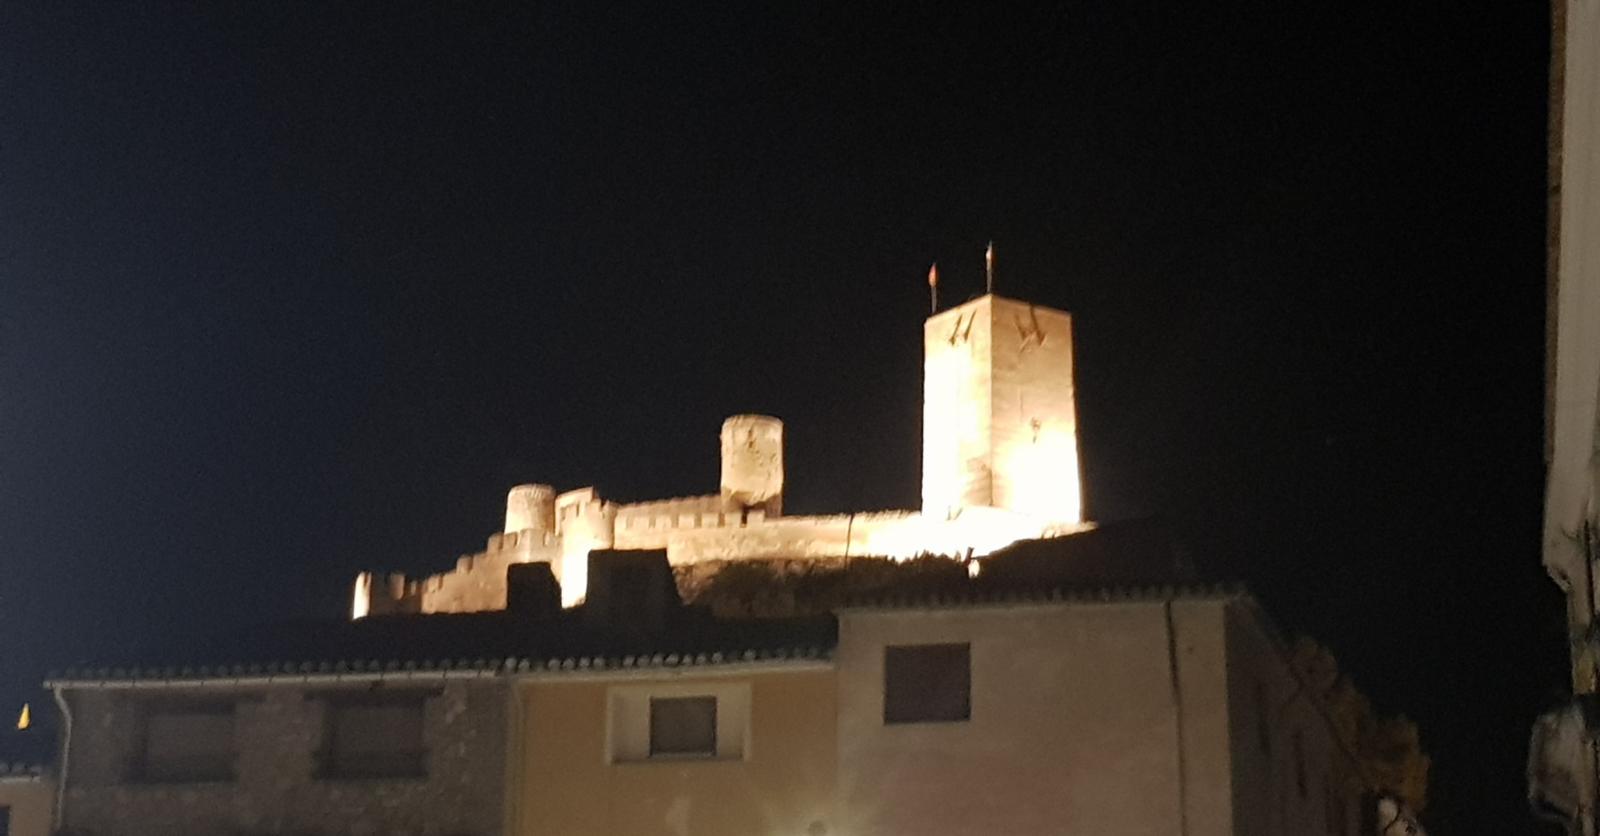 Biar ilumina el castillo con 20 proyectores LED para ahorrar energía